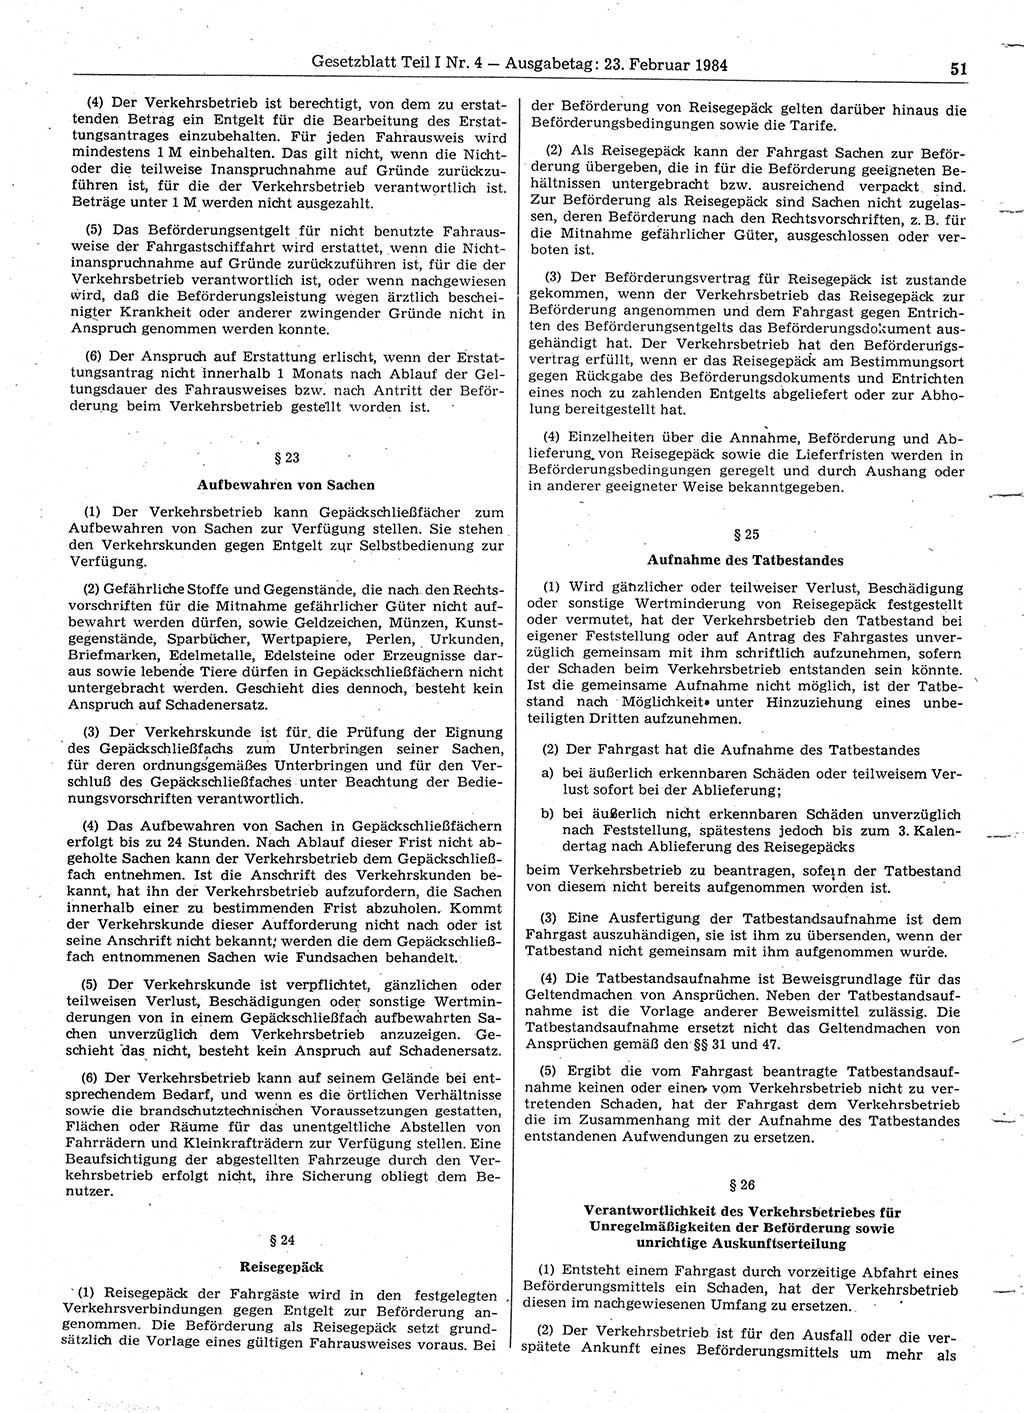 Gesetzblatt (GBl.) der Deutschen Demokratischen Republik (DDR) Teil Ⅰ 1984, Seite 51 (GBl. DDR Ⅰ 1984, S. 51)